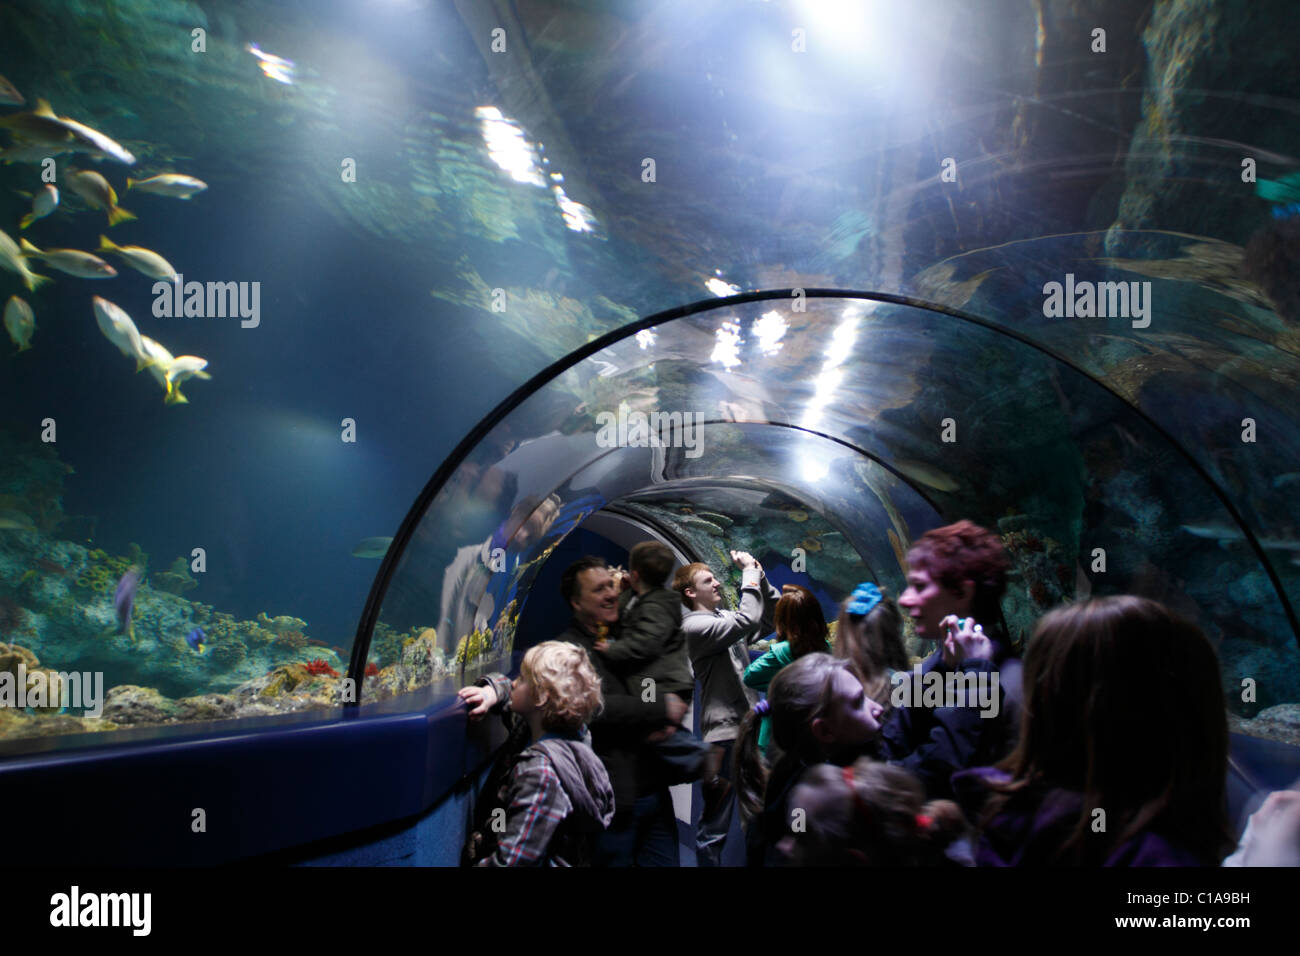 Aquarium-Tunnel mit Menschen betrachten und fotografieren Fisch  Stockfotografie - Alamy